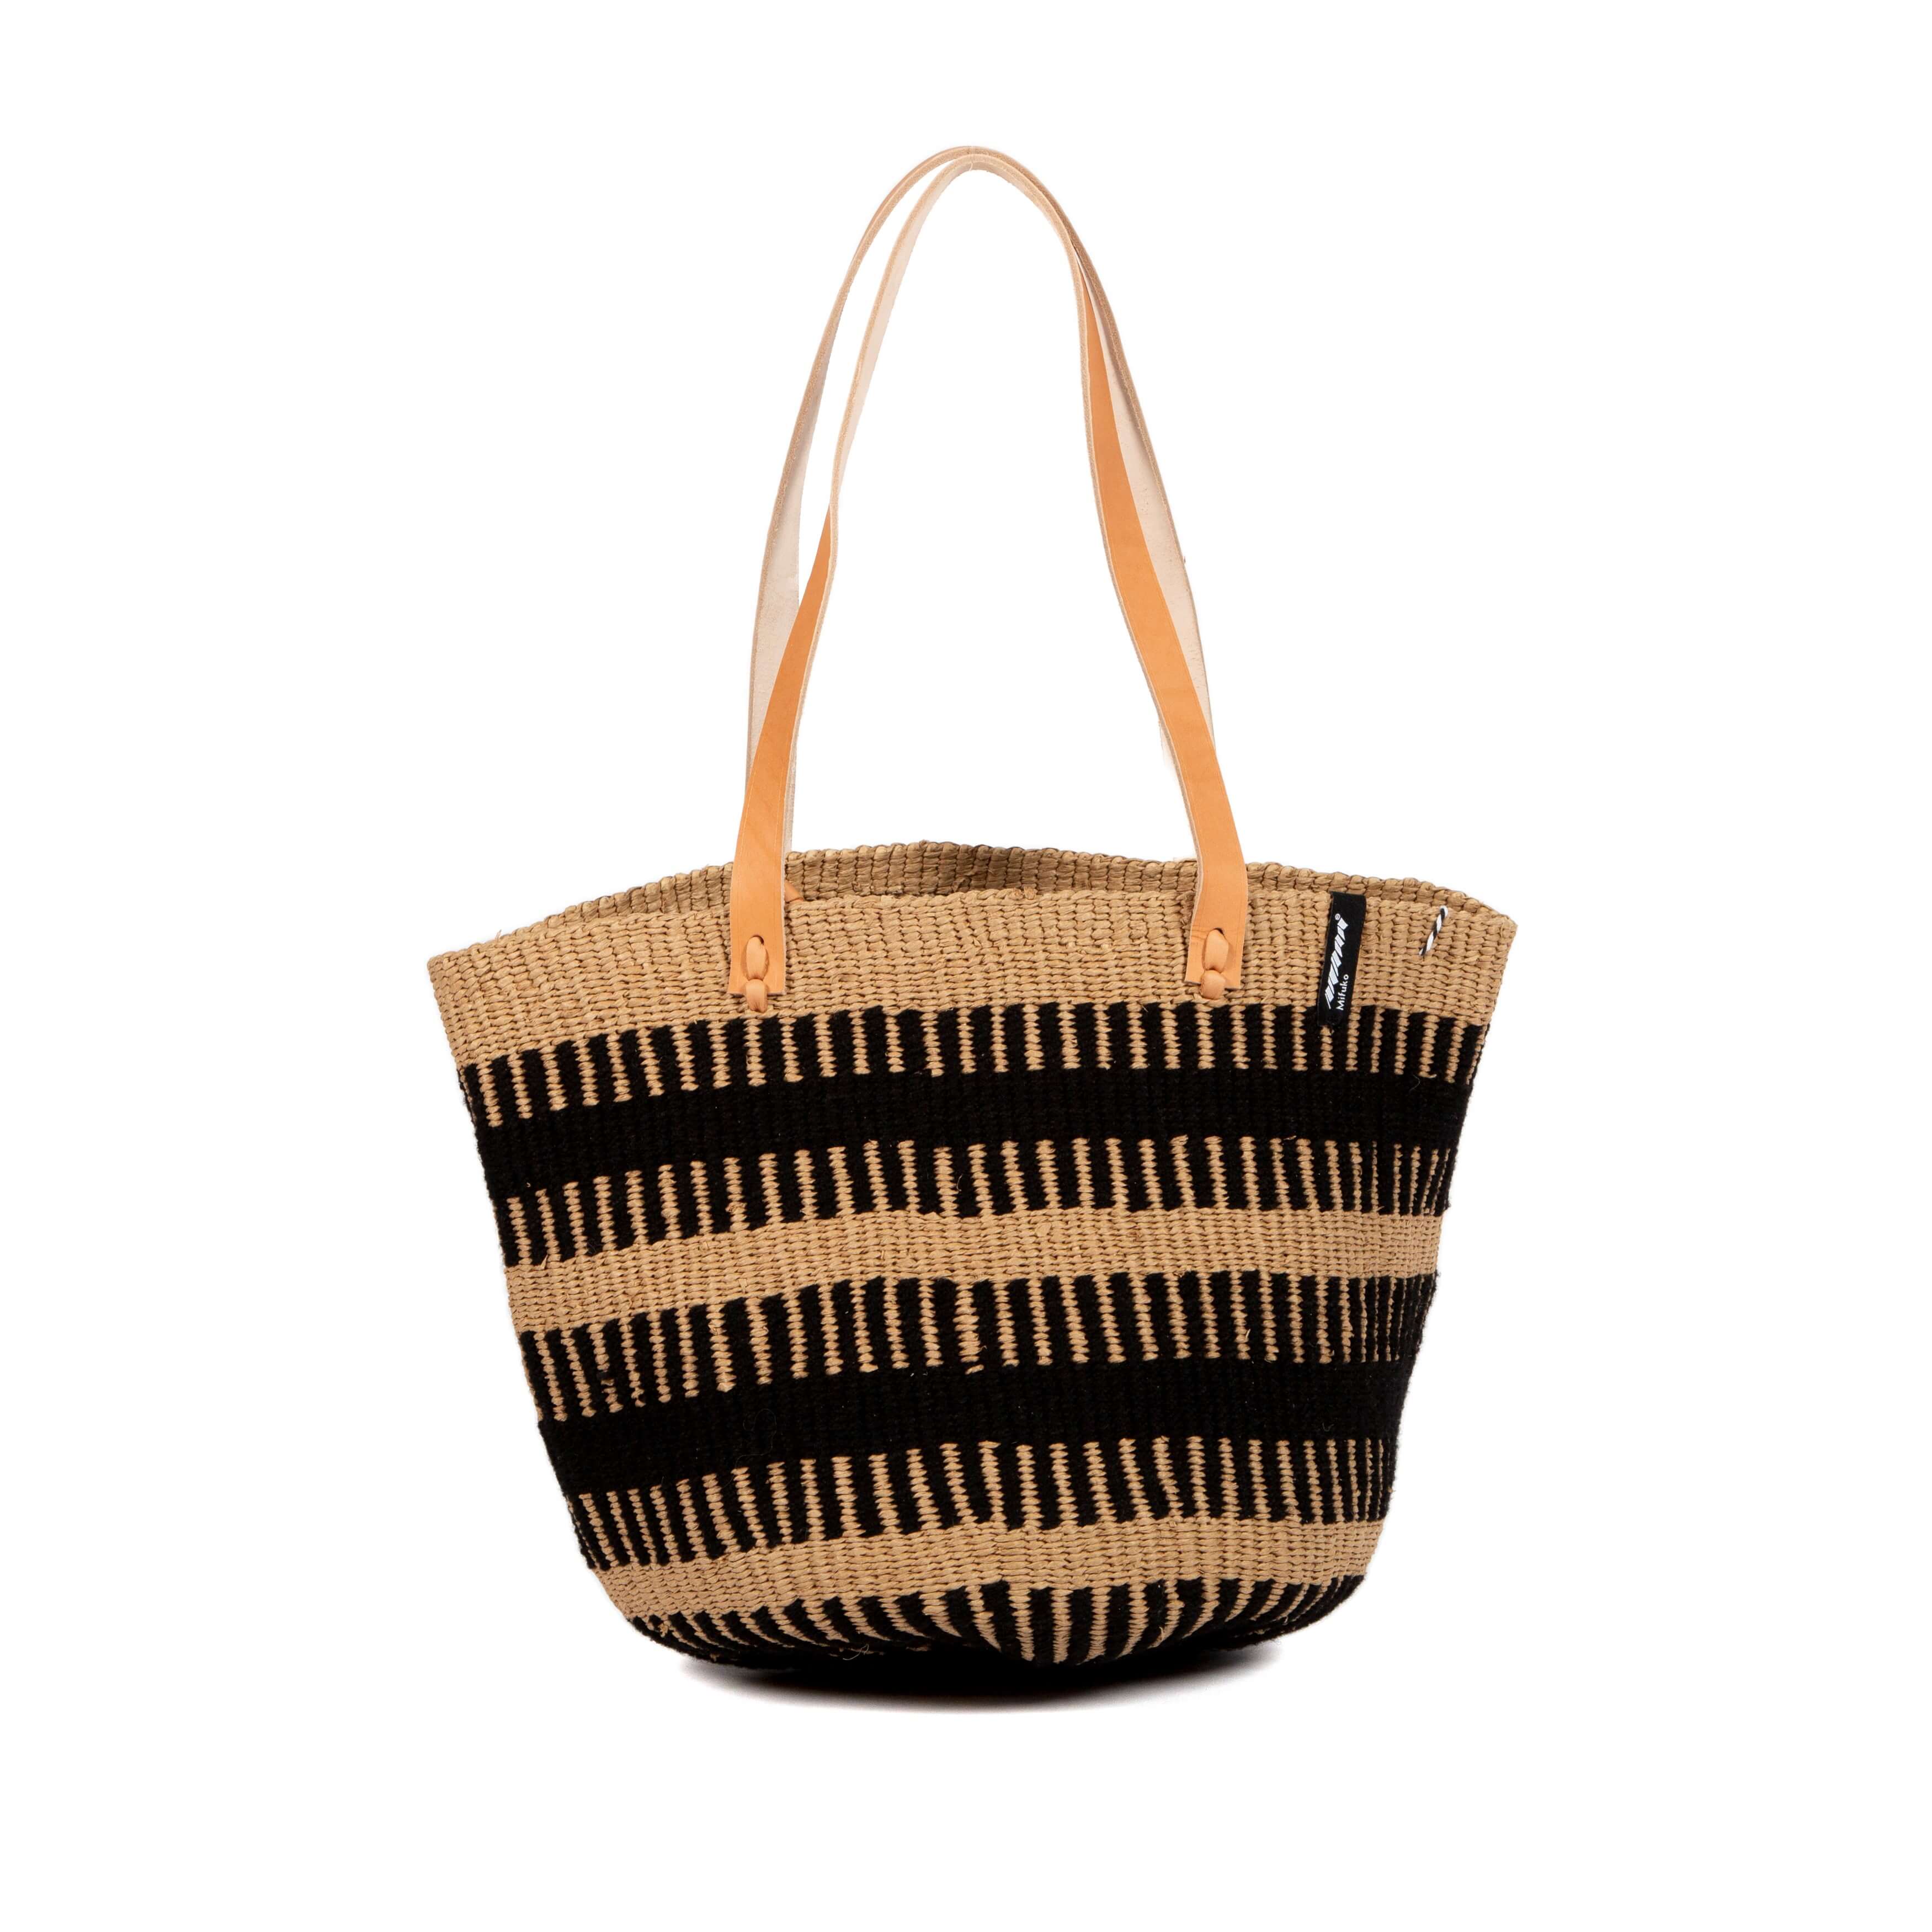 Pamba Shopper basket | Black rib weave M